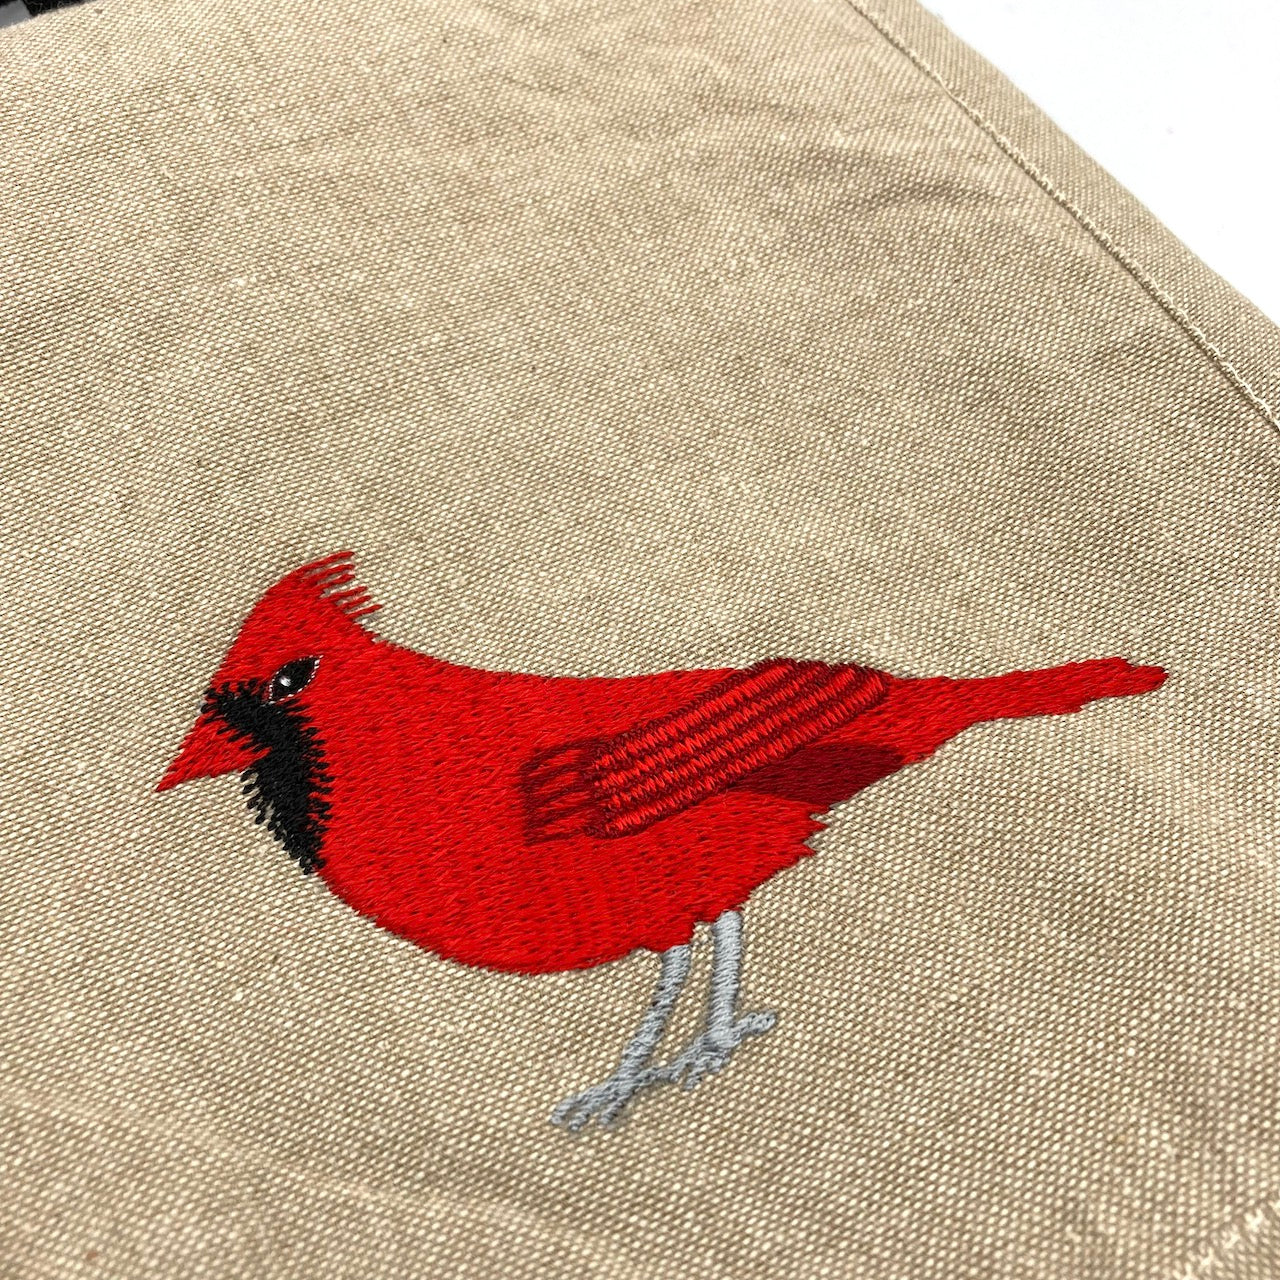 Cardinal Field Bag